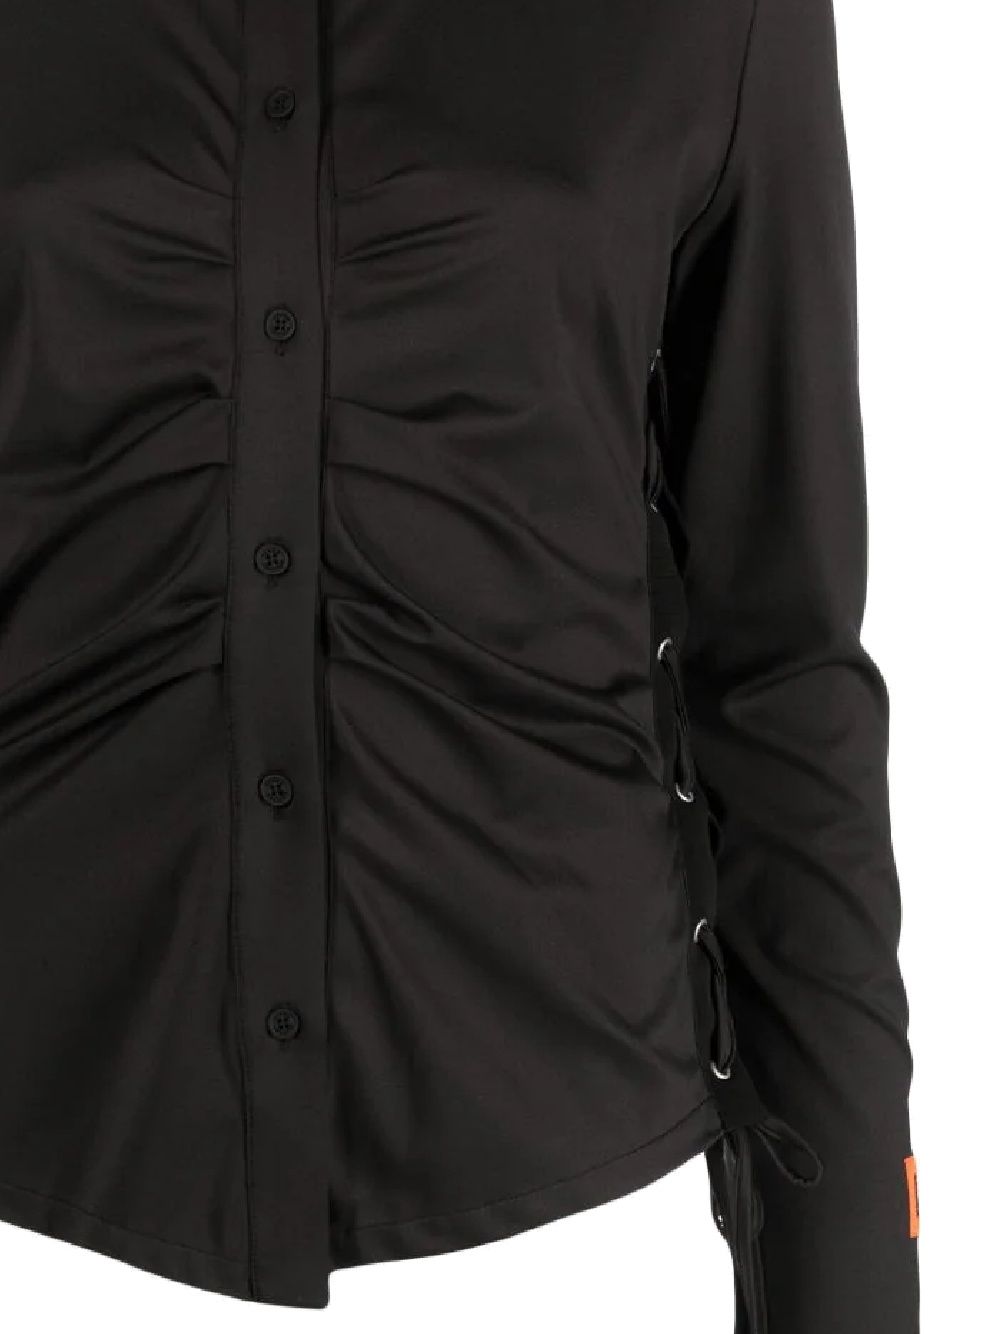 Camicia nera con dettaglio arricciato